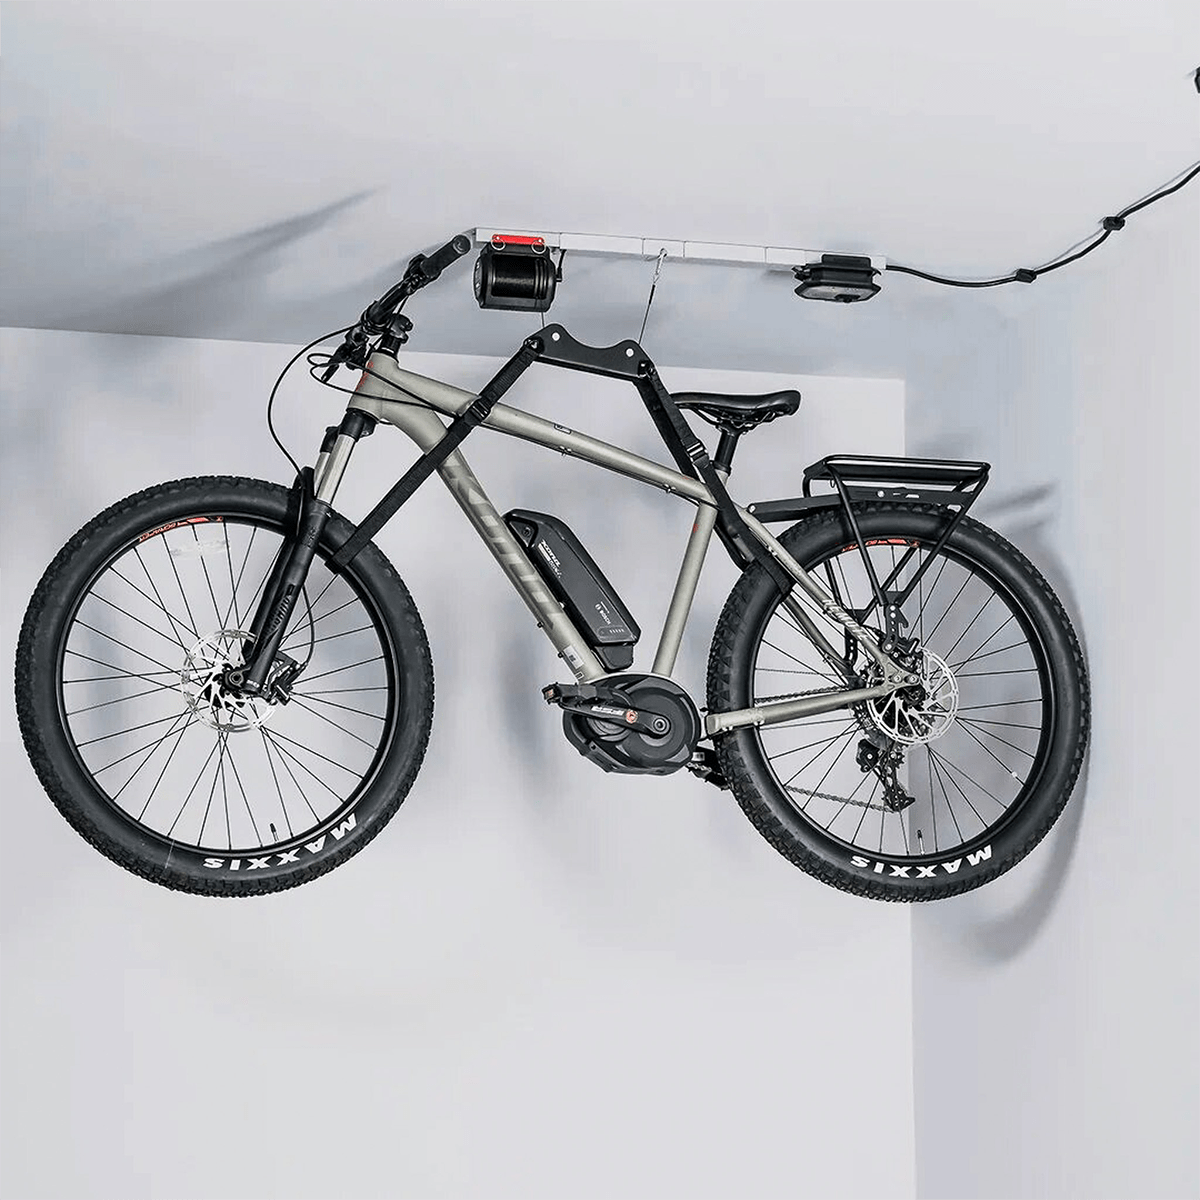 Single-Bike Lifter